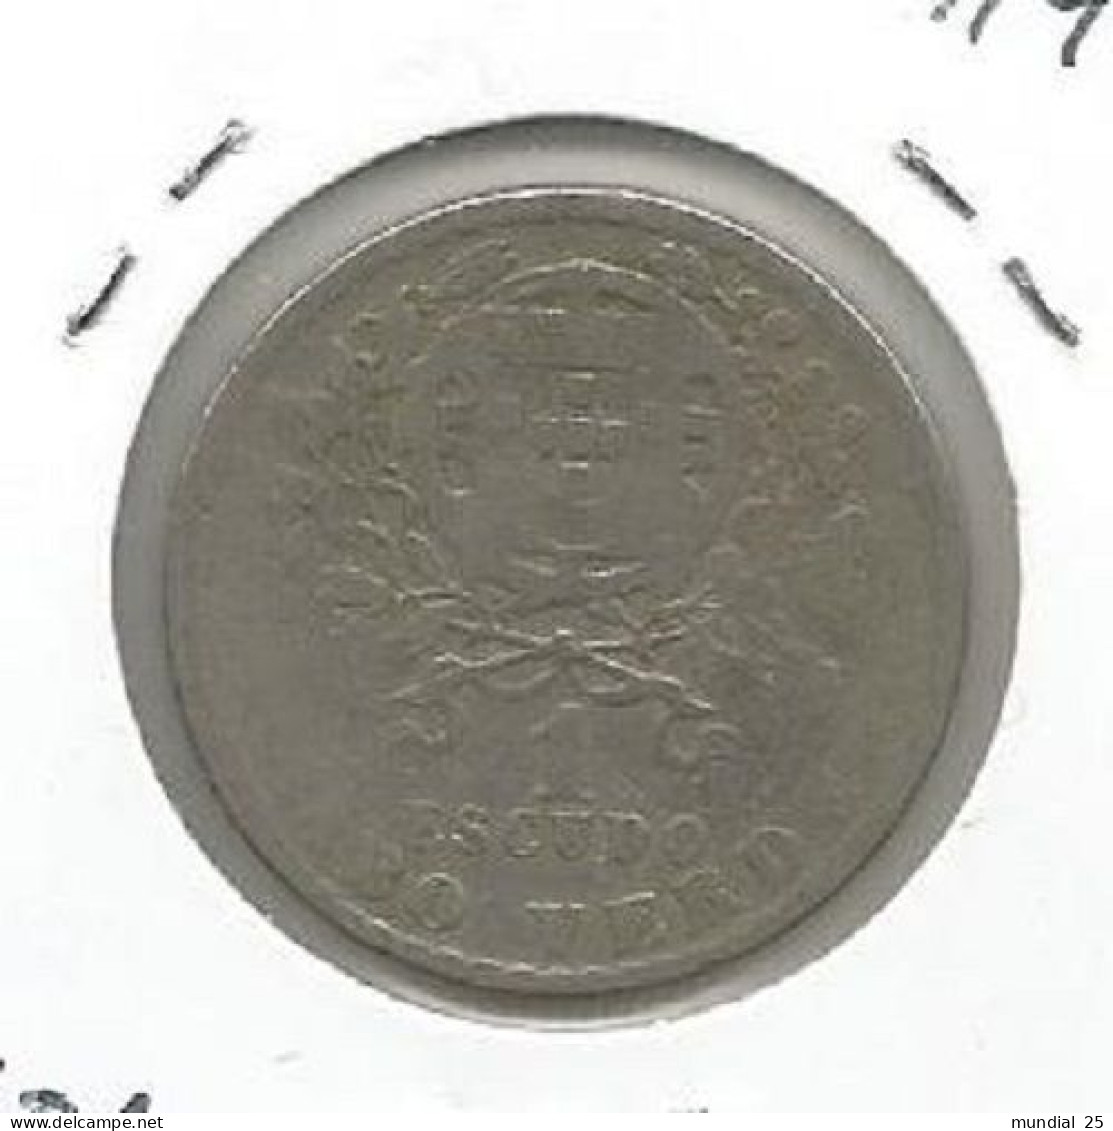 CAPE VERDE PORTUGAL 1$00 ESCUDO 1930 - Cape Verde